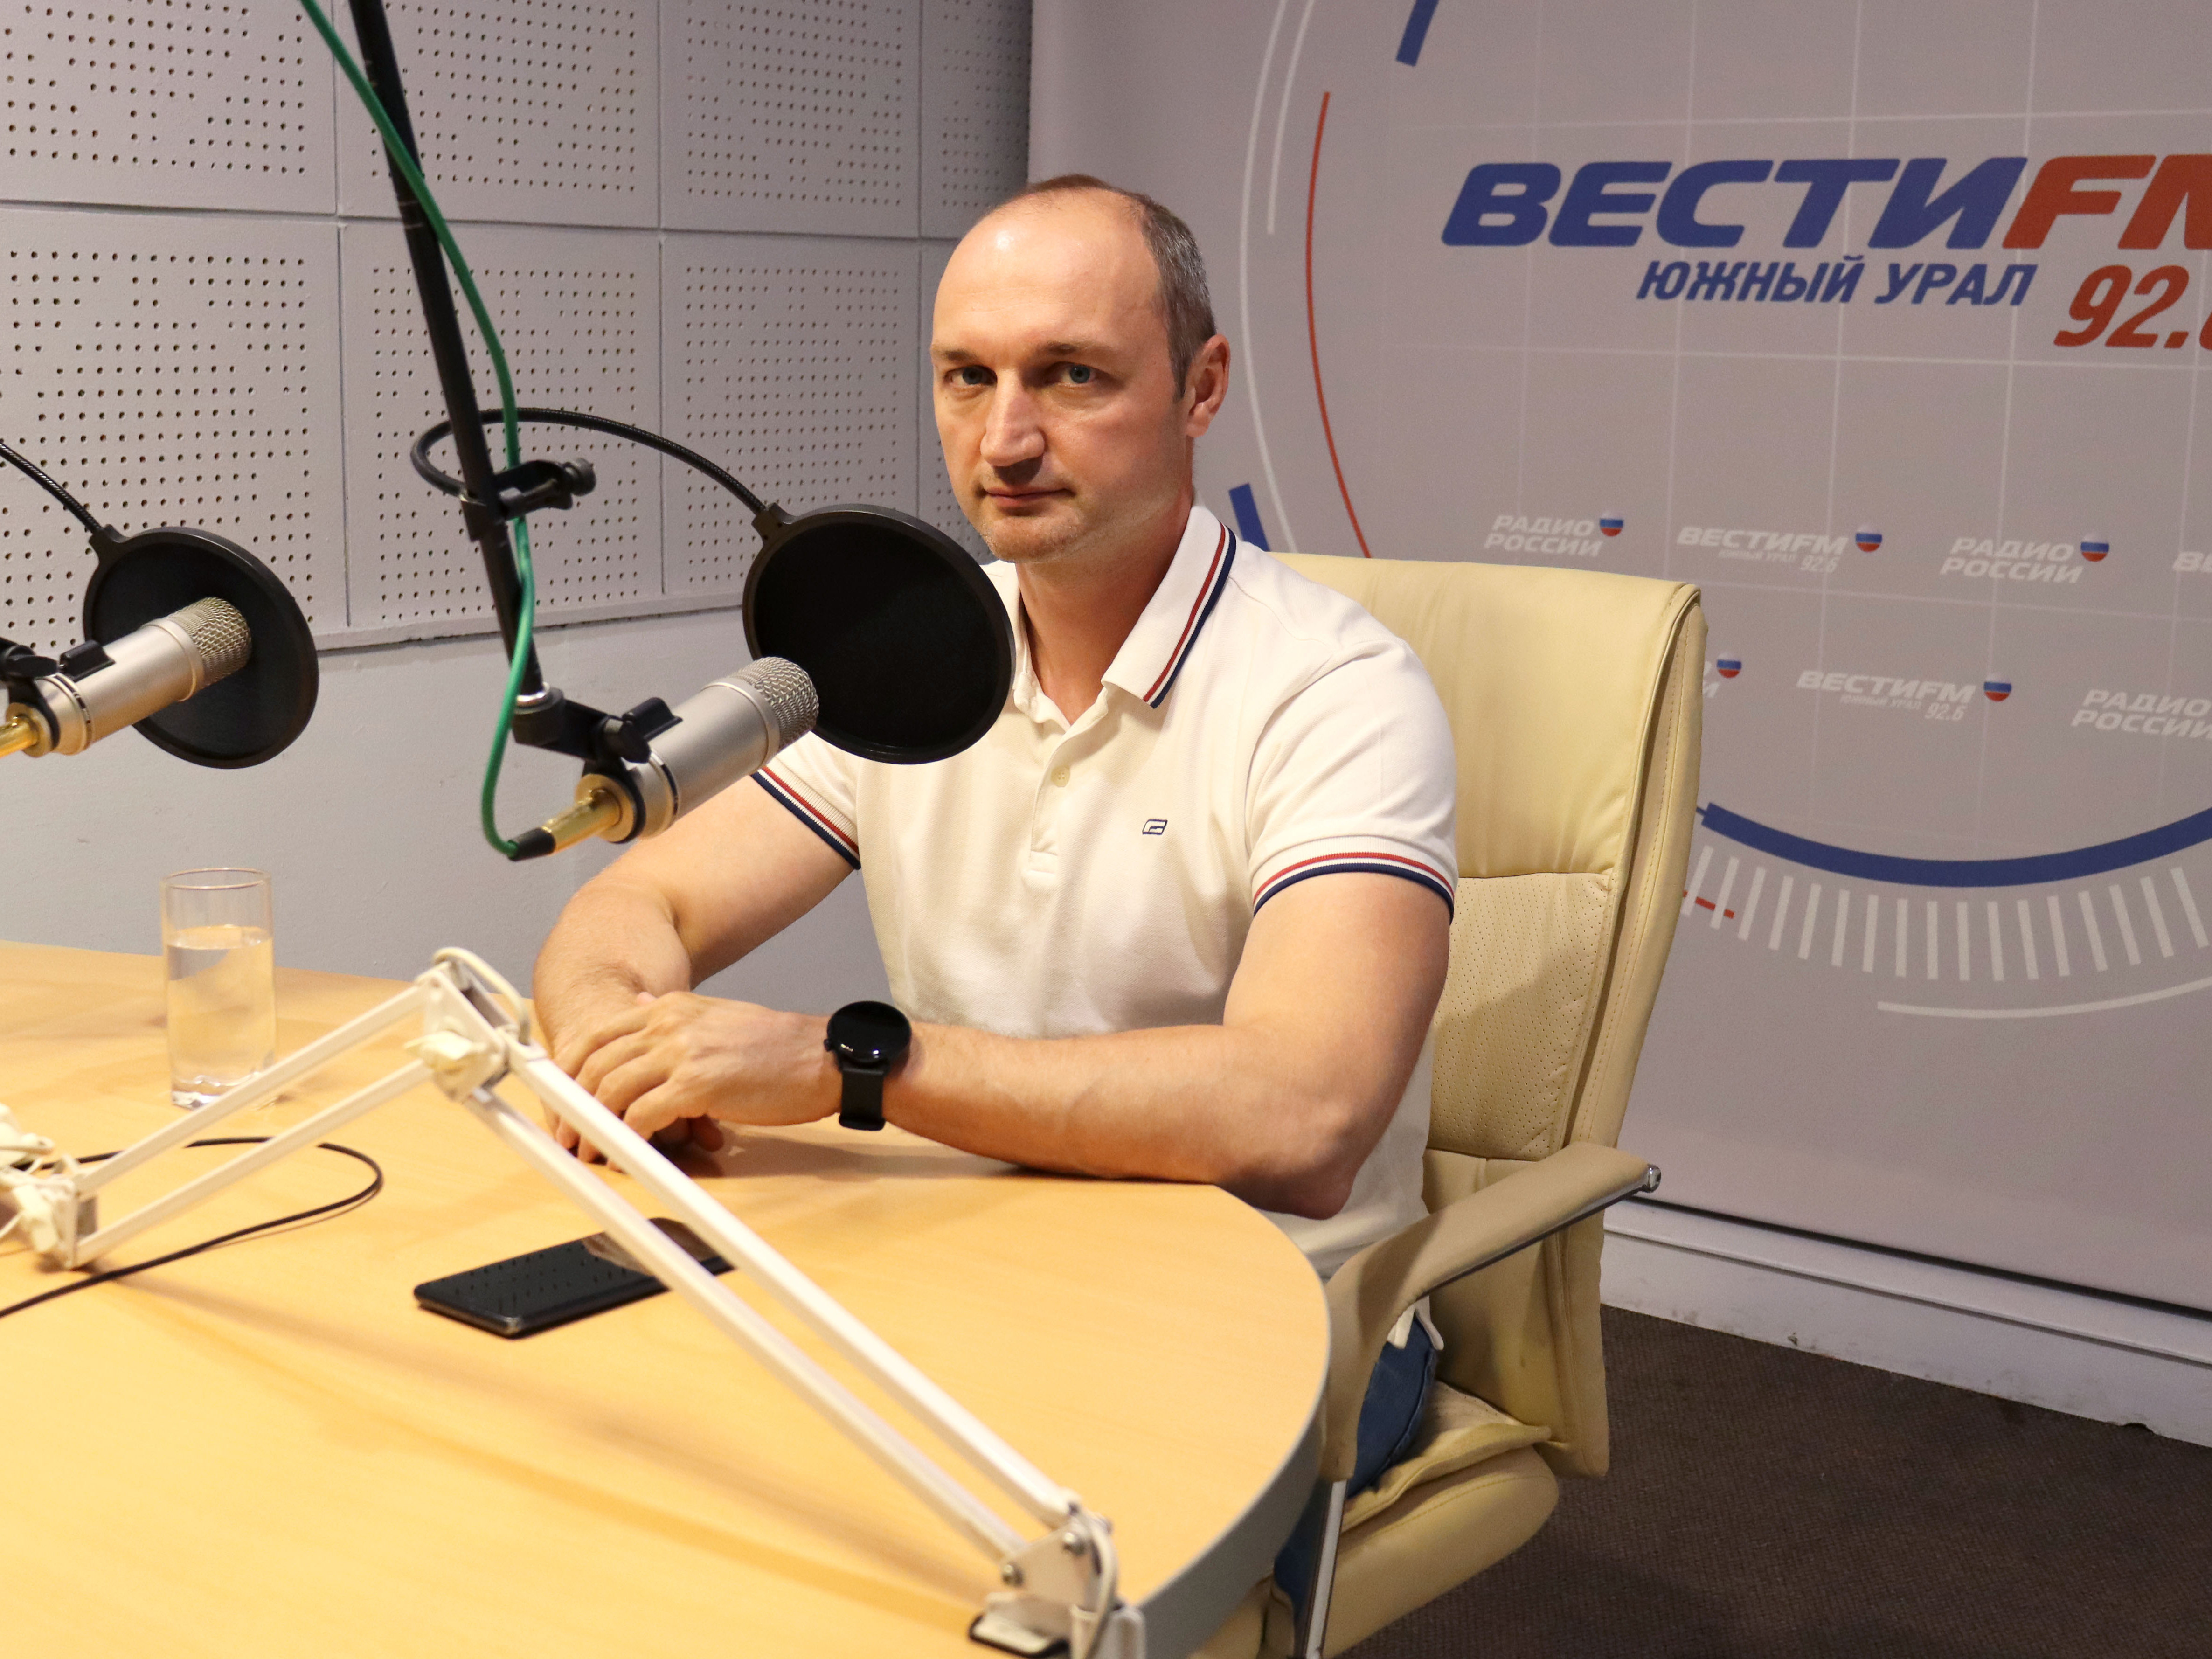 Глава района Юрий Кузнецов в радиоэфире «Радио России – Южный Урал» (97.8FM) рассказал о благоустройстве и развитии района